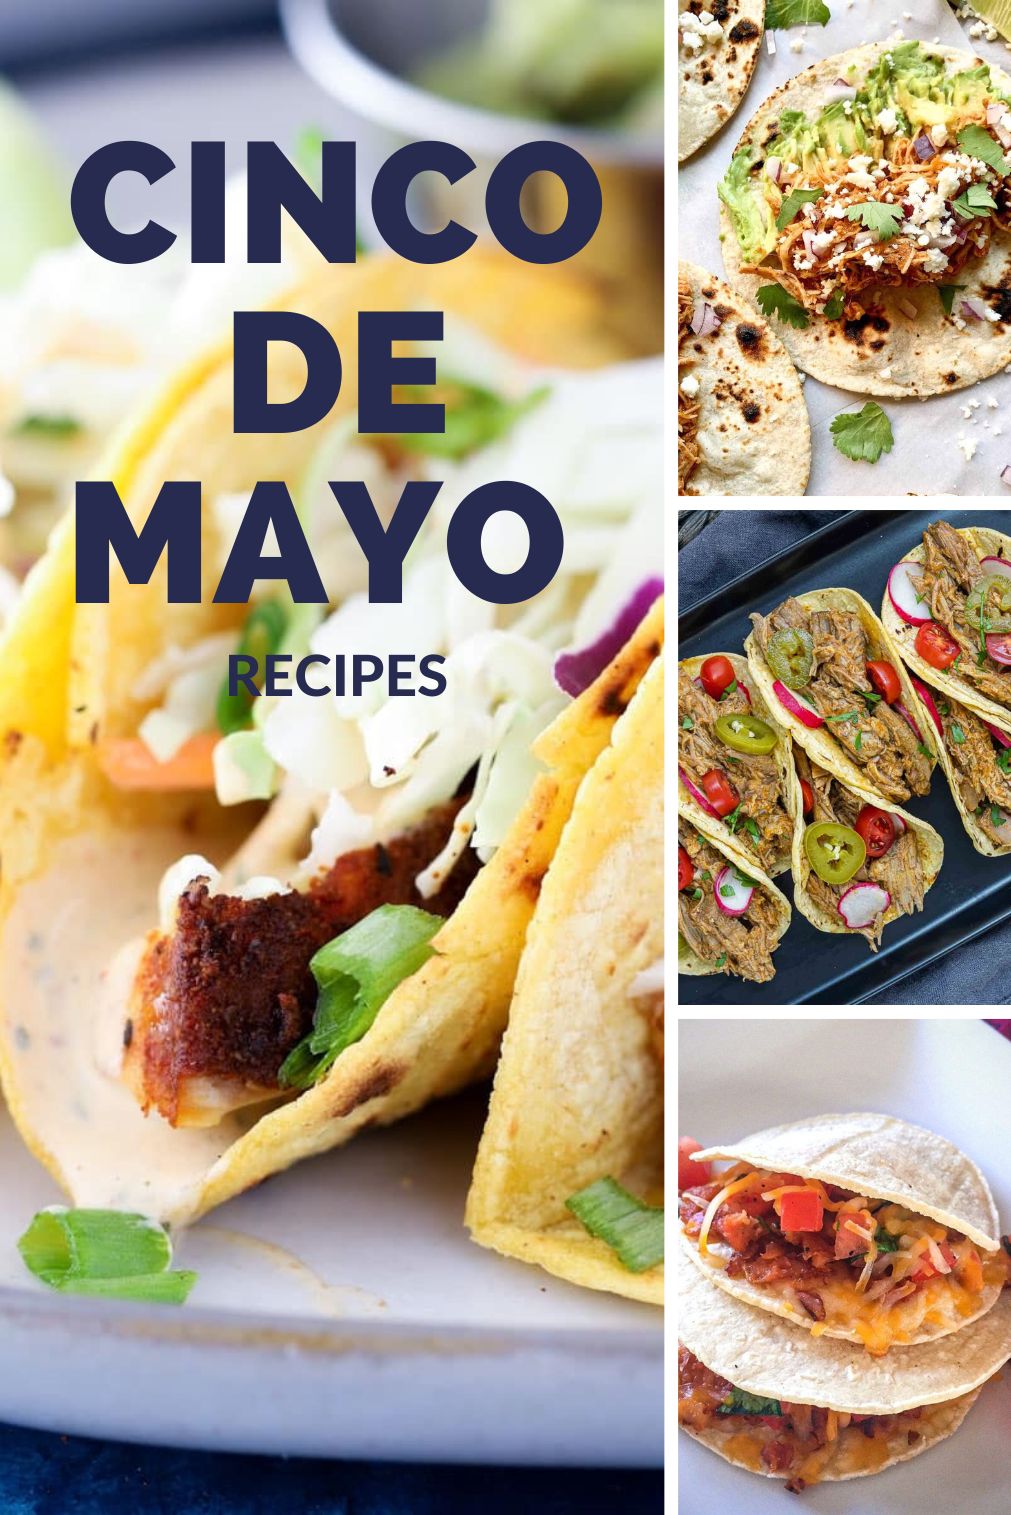 Delicious Mexican Recipes for Cinco de Mayo